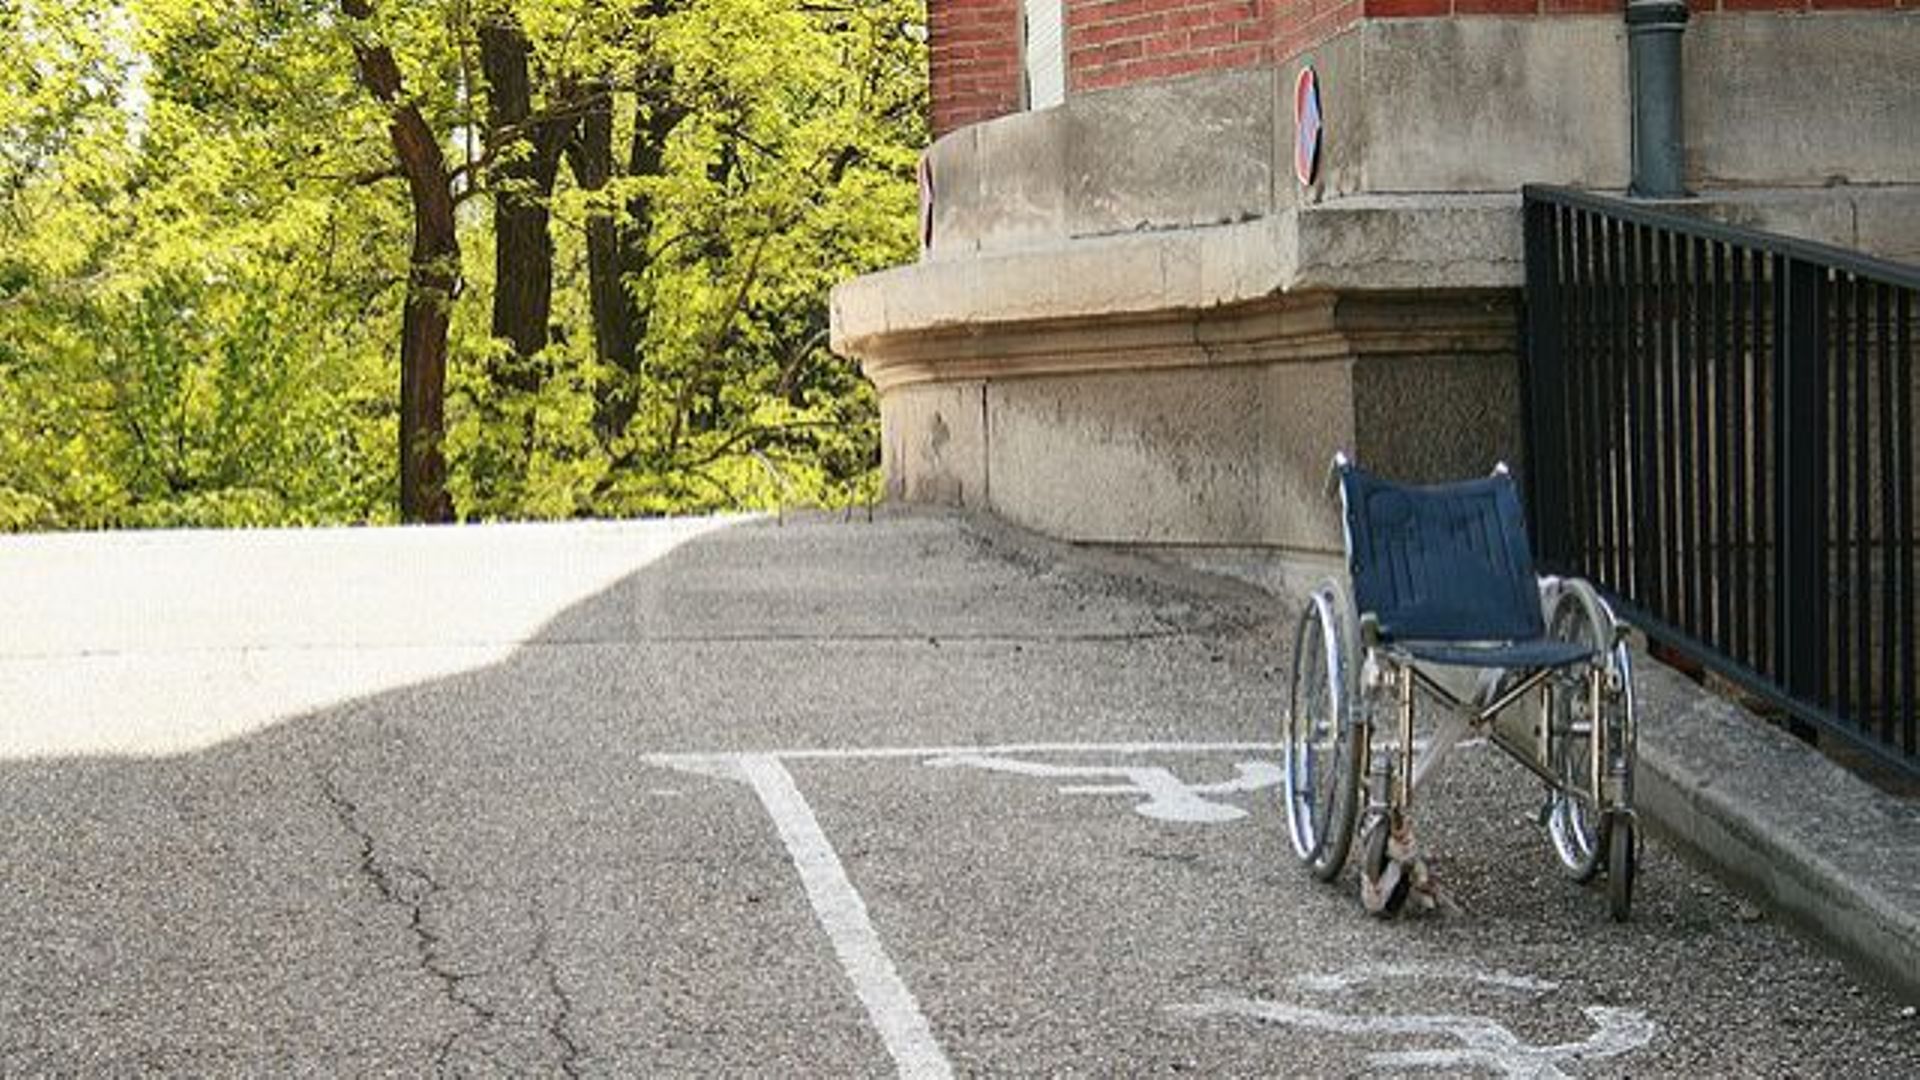 Les autorités fédérales ne remplissent pas leur propre objectif d'employer 3% de personnes handicapées.